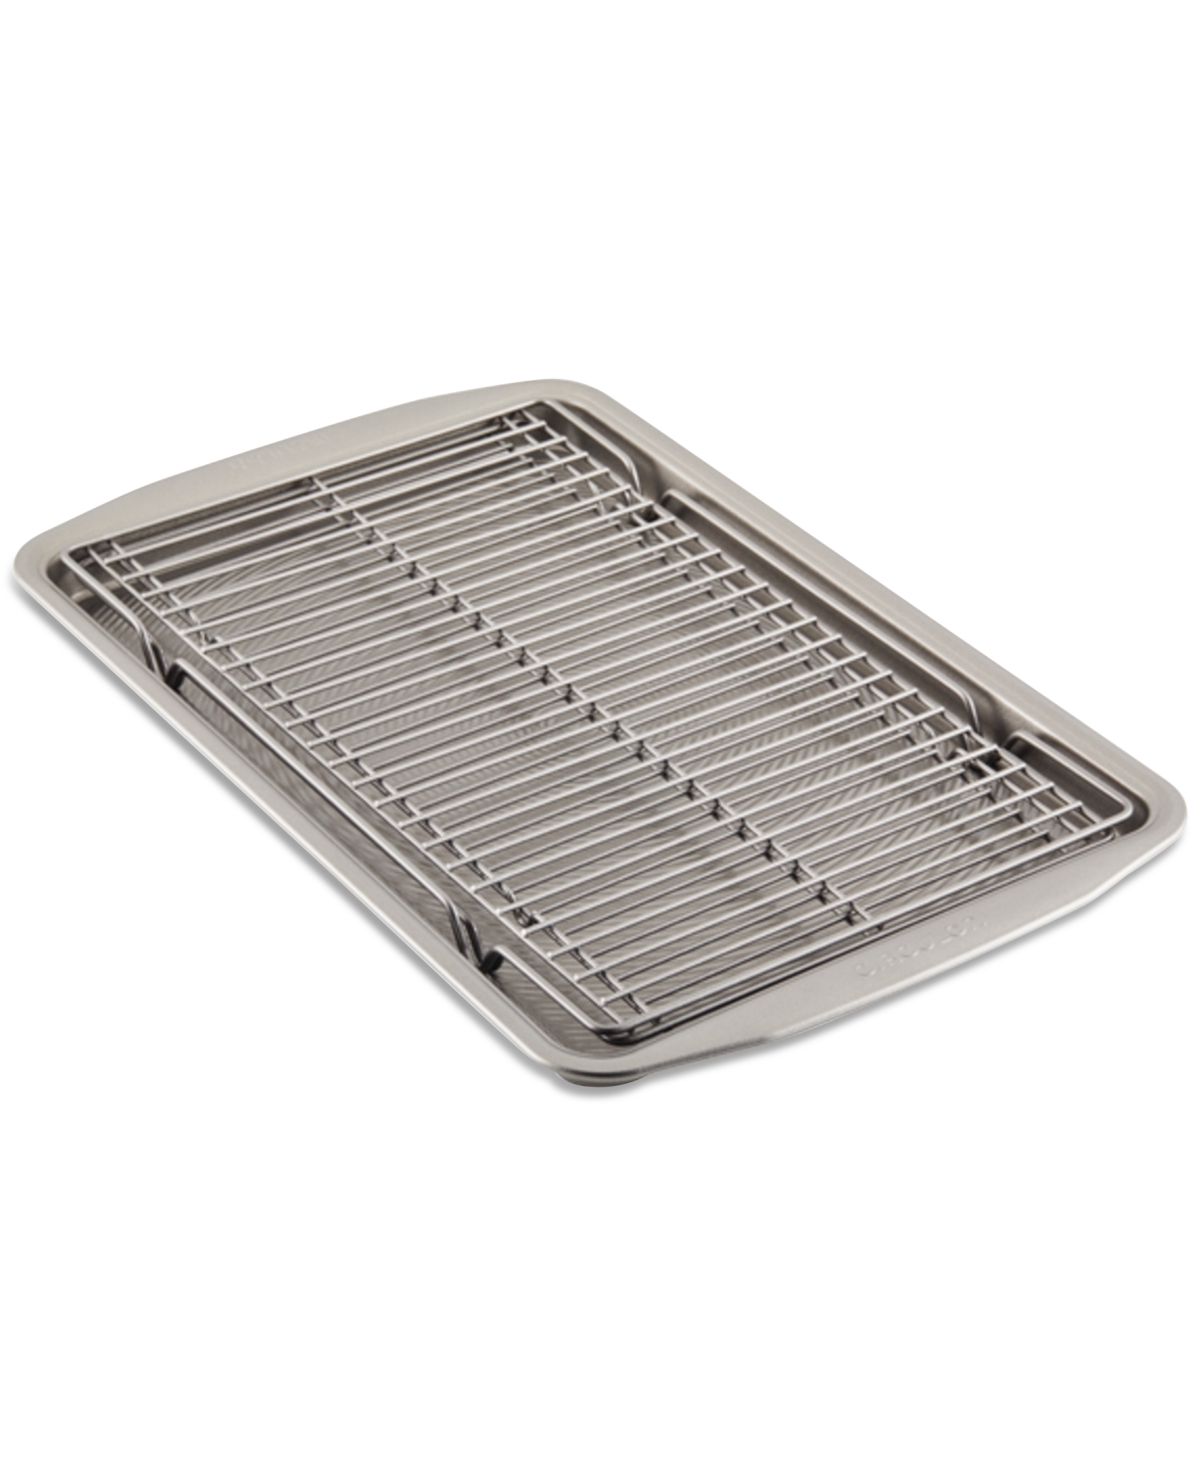 Circulon Bakeware 11" X 17" Baking Sheet Pan & Expandable Cooling Rack 3-pc. Set In Silver